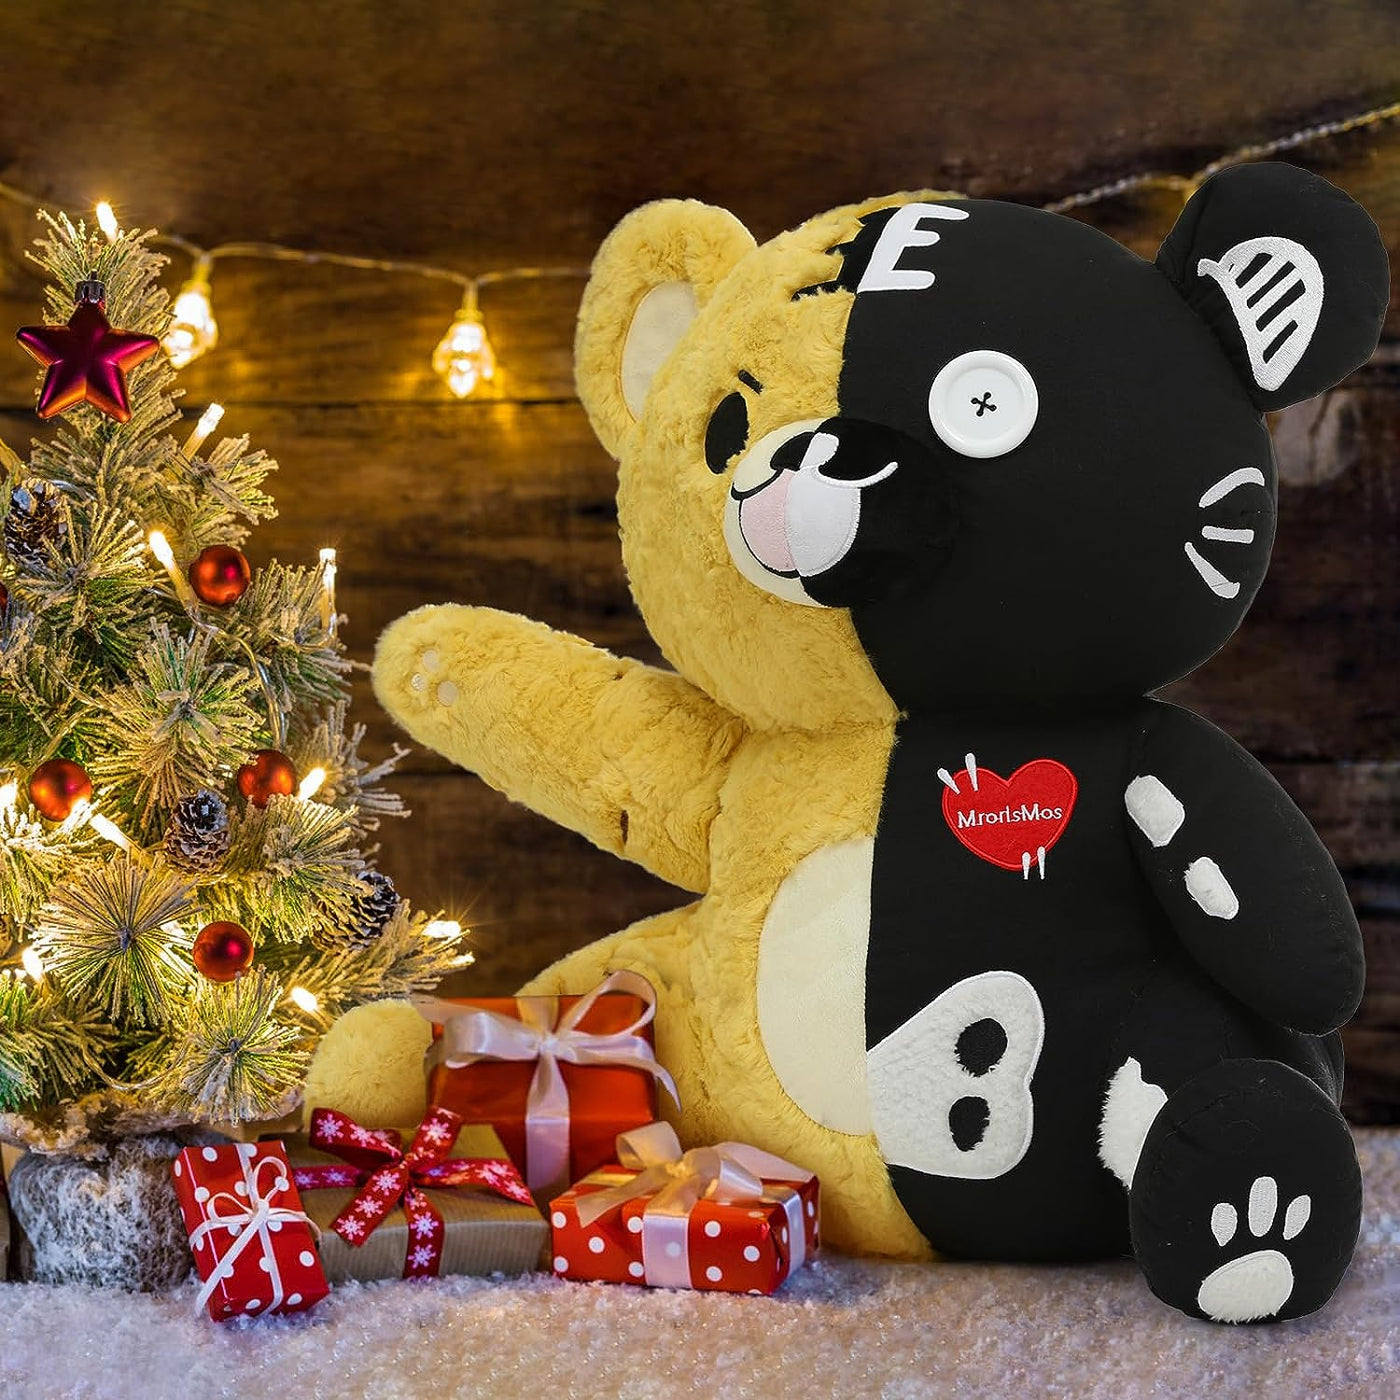 Cool Goth Teddy Bear Stuffed Animal Toy, 20.86 Inches